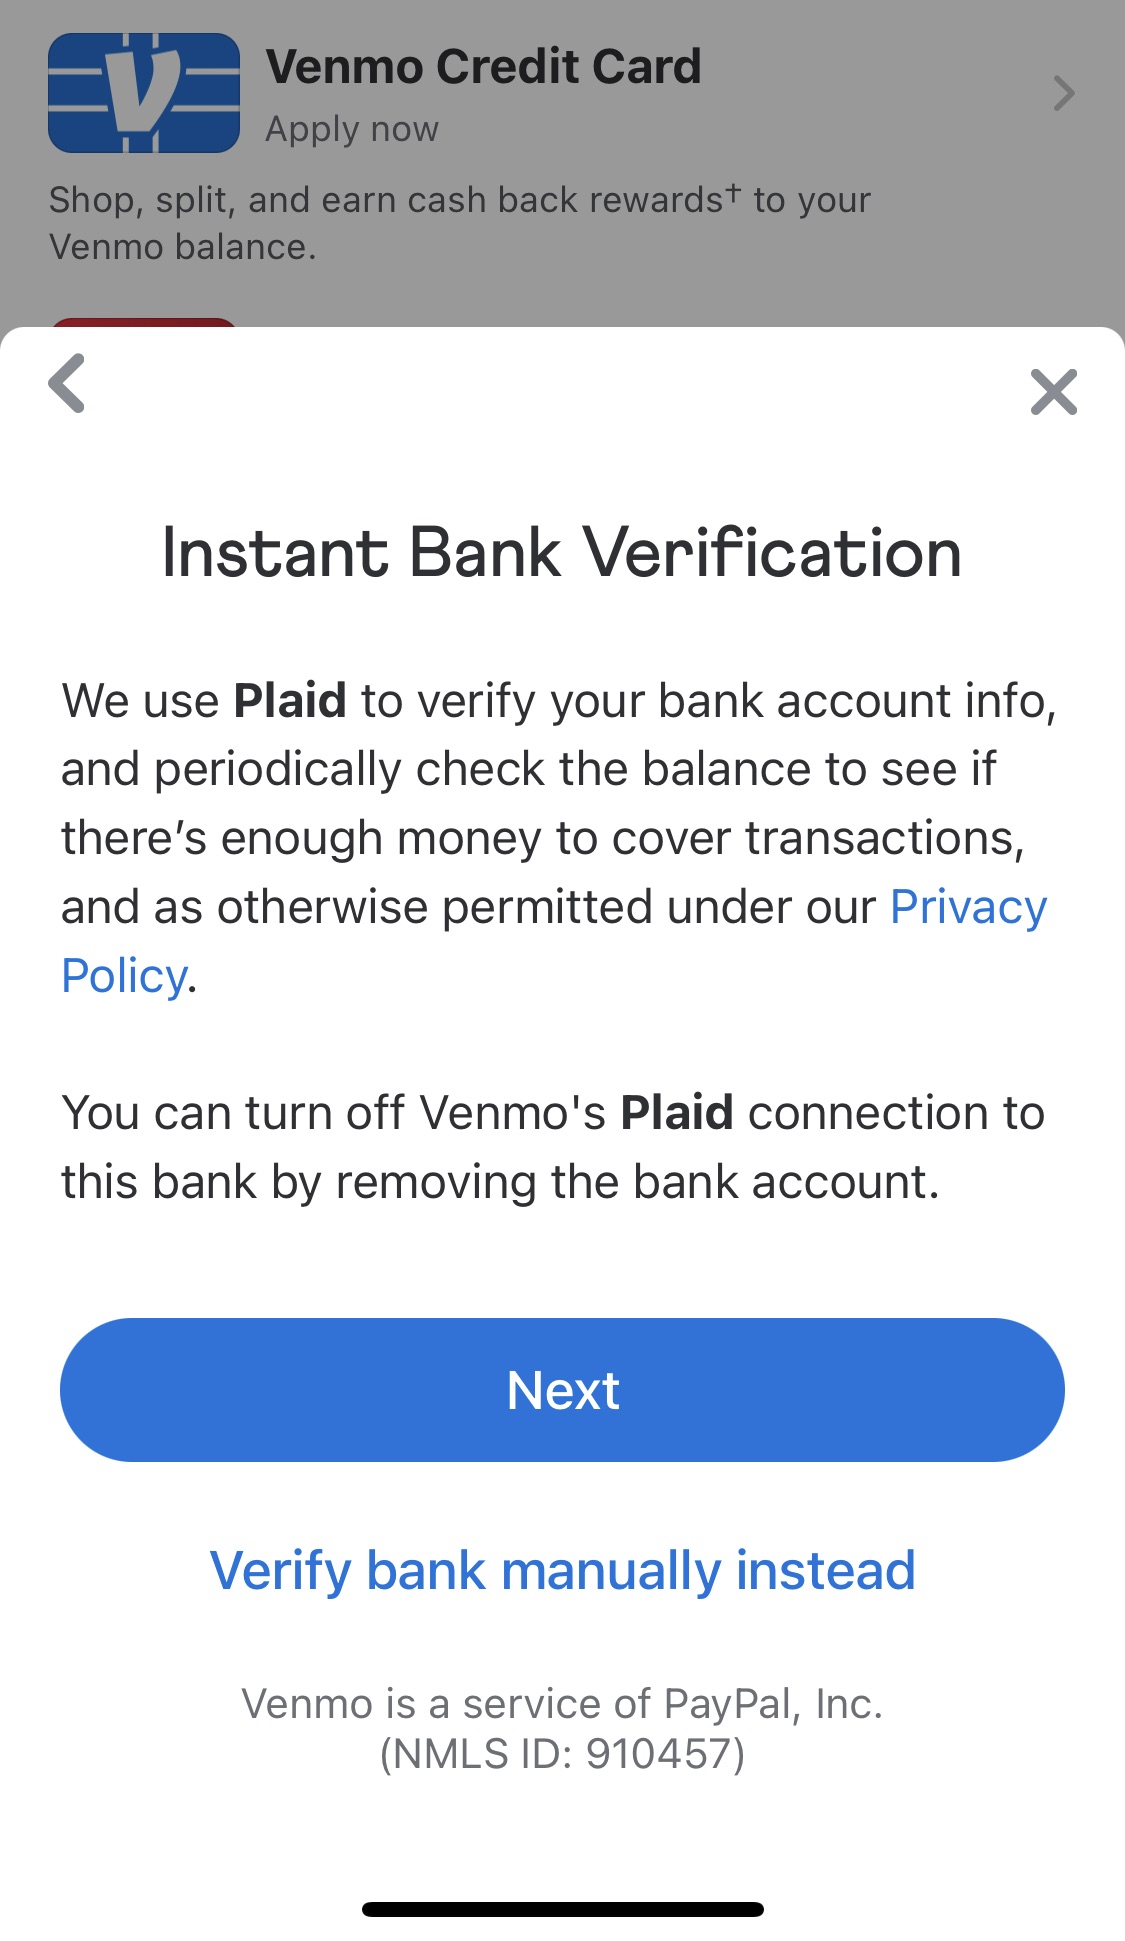 Plaid notification through Venmo